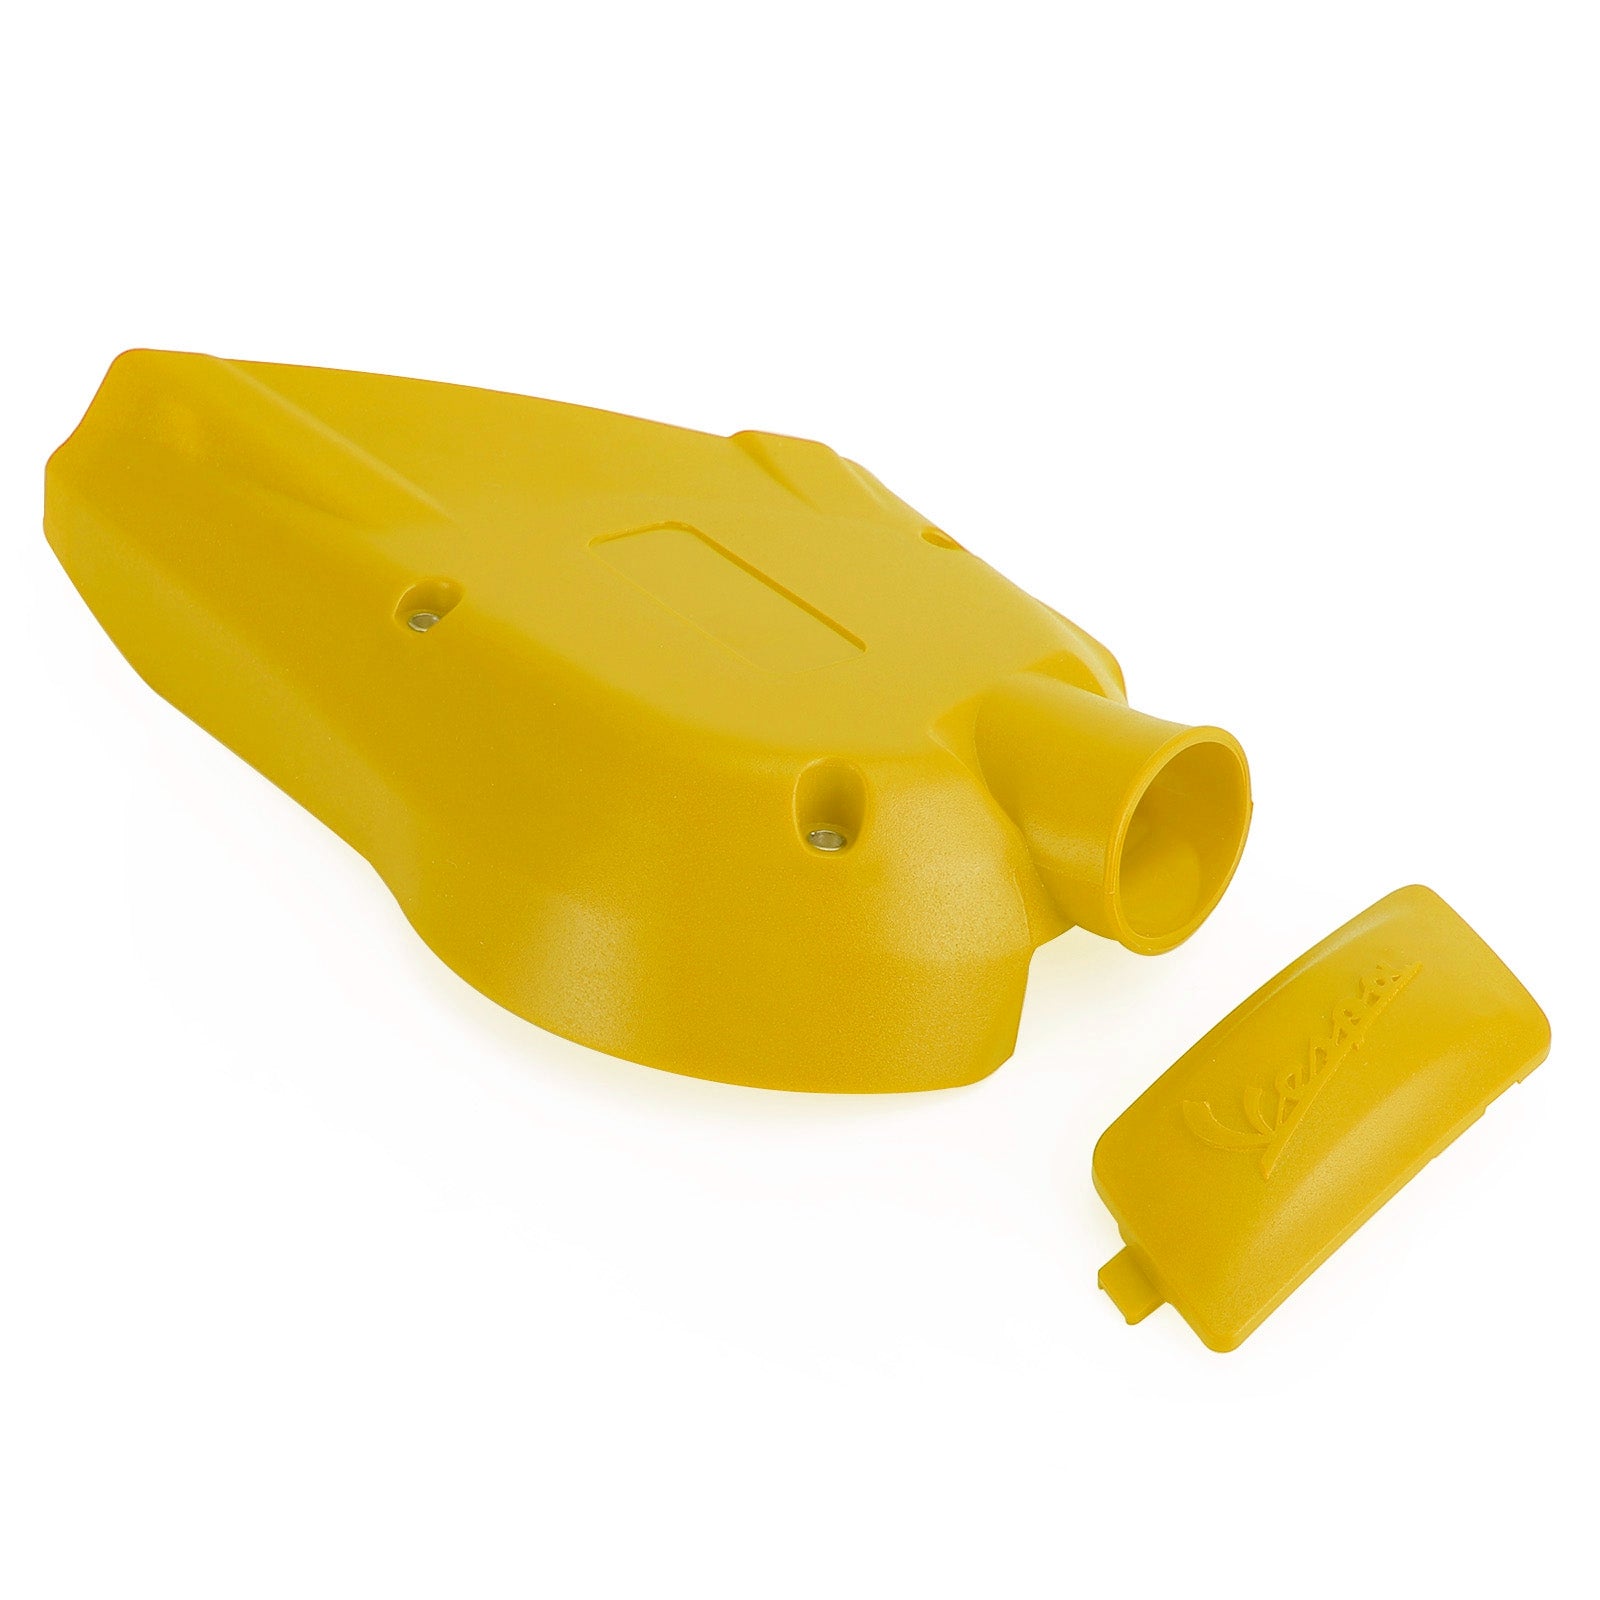 Vespa SprintPrimavera 150
Cubierta amarilla de la transmisión de la caja de cambios del protector del motor